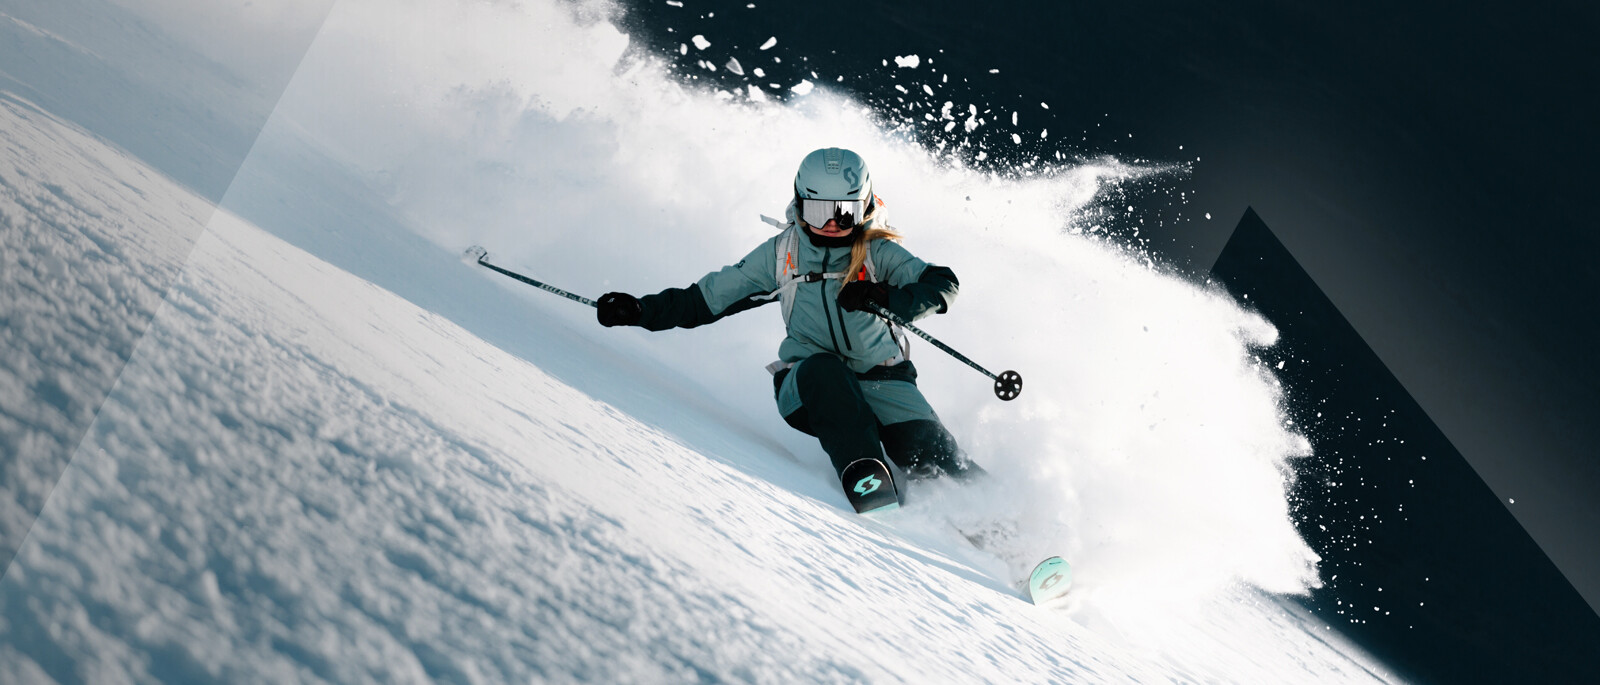 Vente de gants de ski SCOTT en Gore-tex et Primaloft en promotion